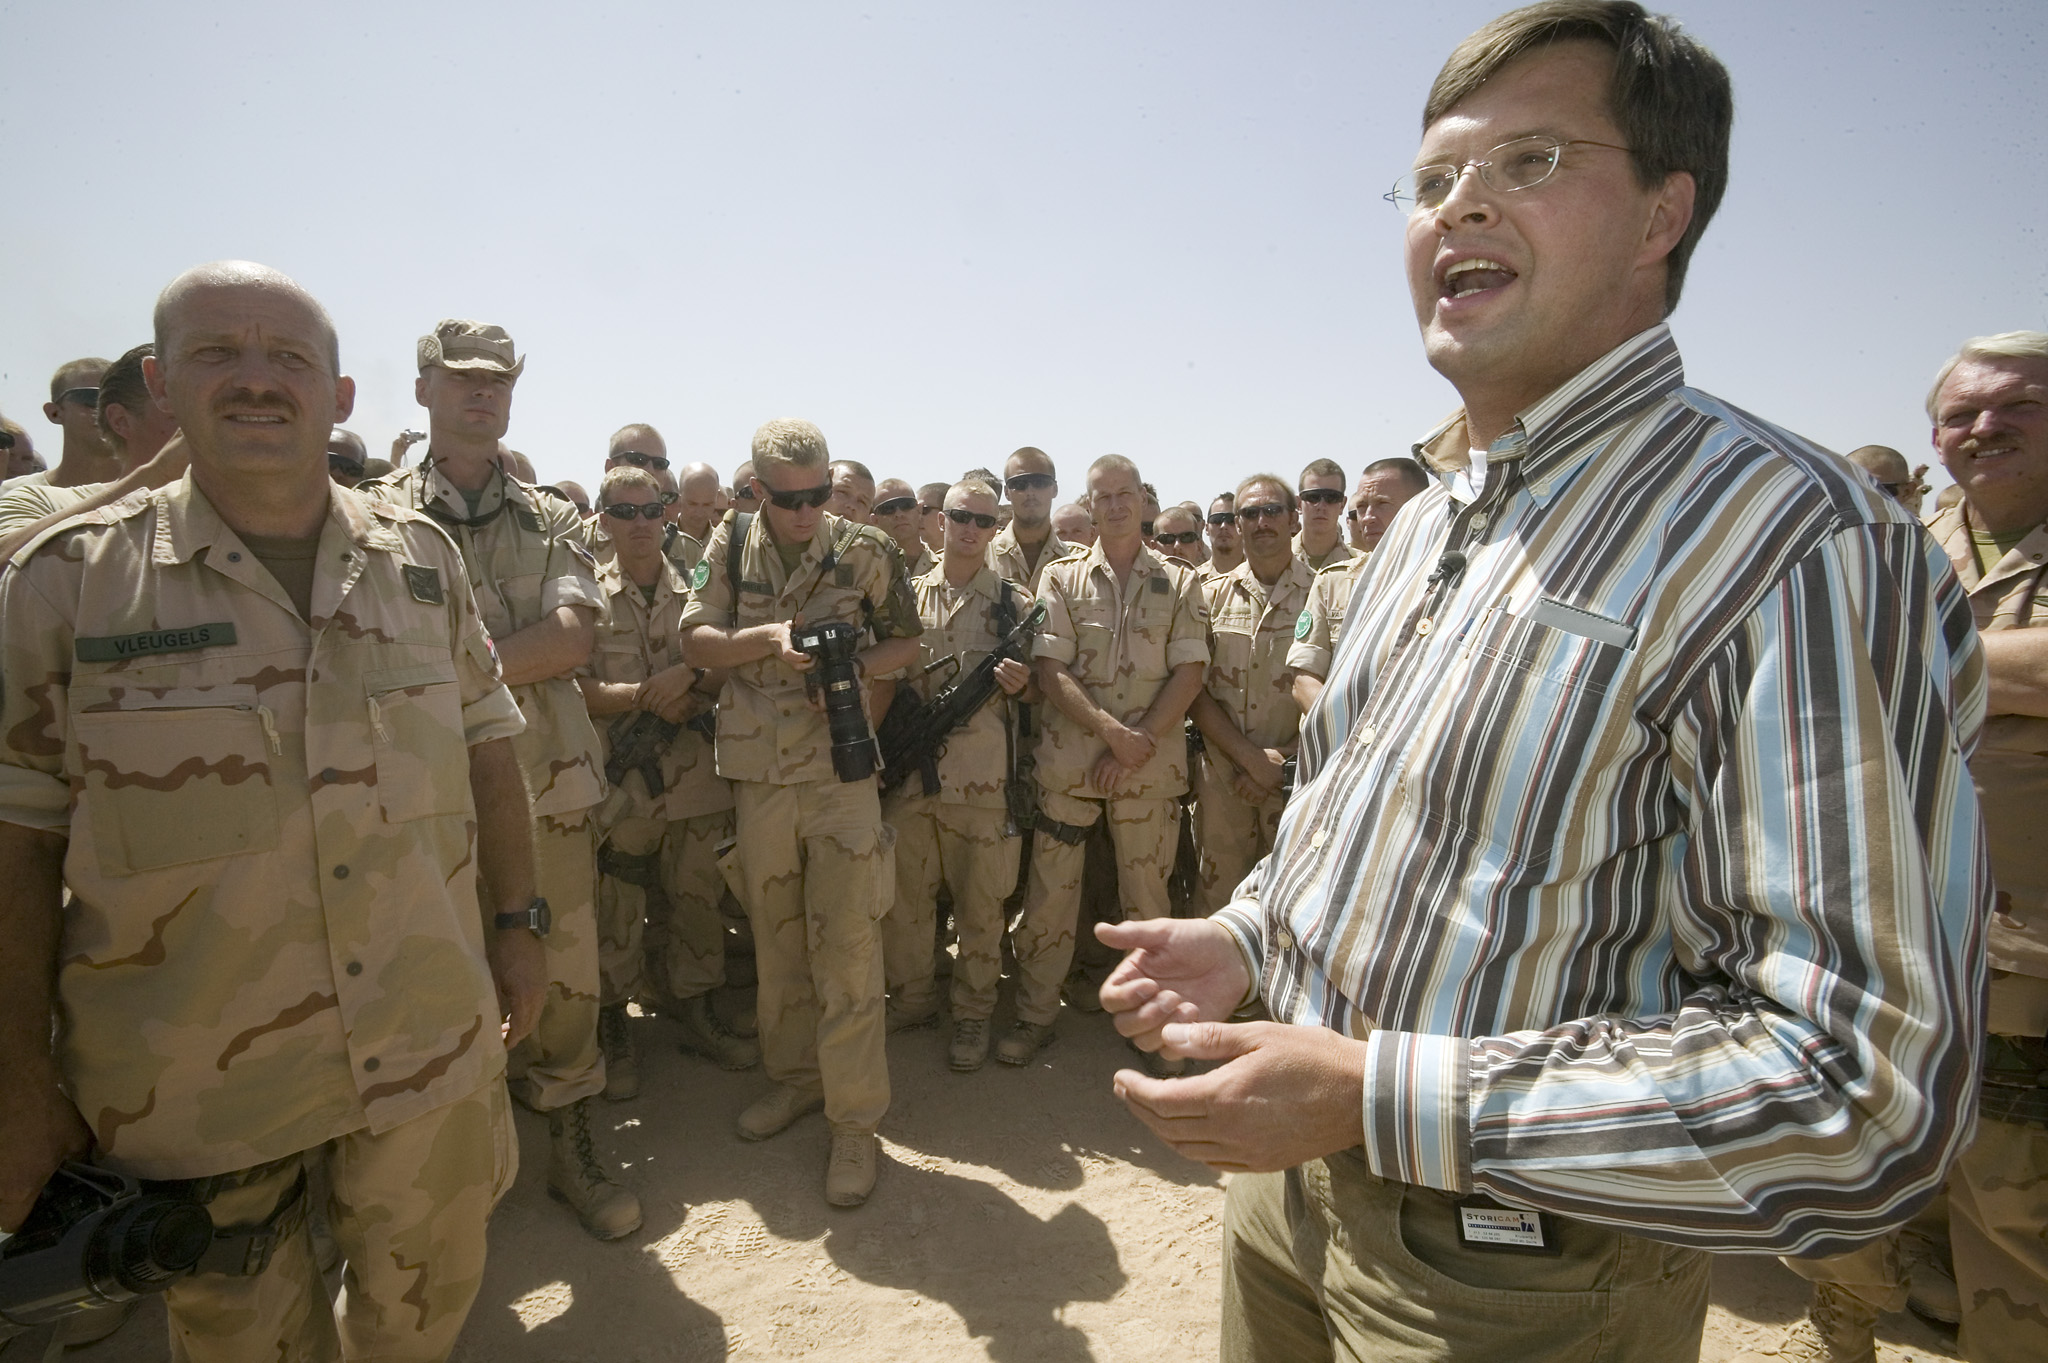 Toenmalig premier Balkenende bracht in 2006 een bezoek aan de Nederlandse basis in Uruzgan. Foto: ANP/Hennie Keeris